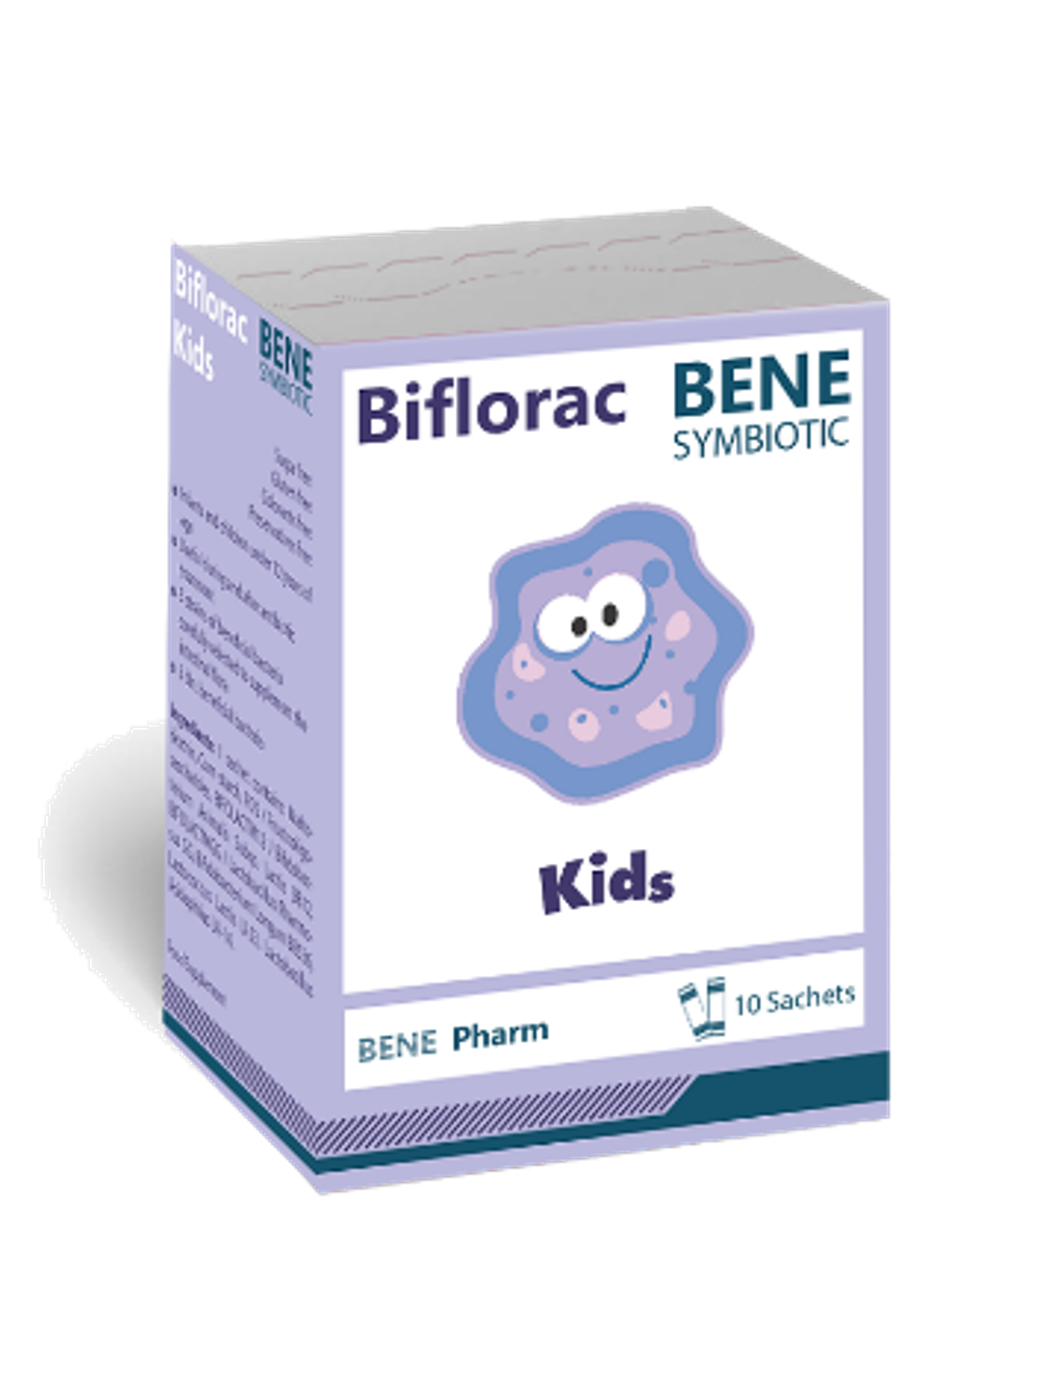 ბიფლორაკი ბენე ბავშვებისთვის / Biflorac Bene Kids